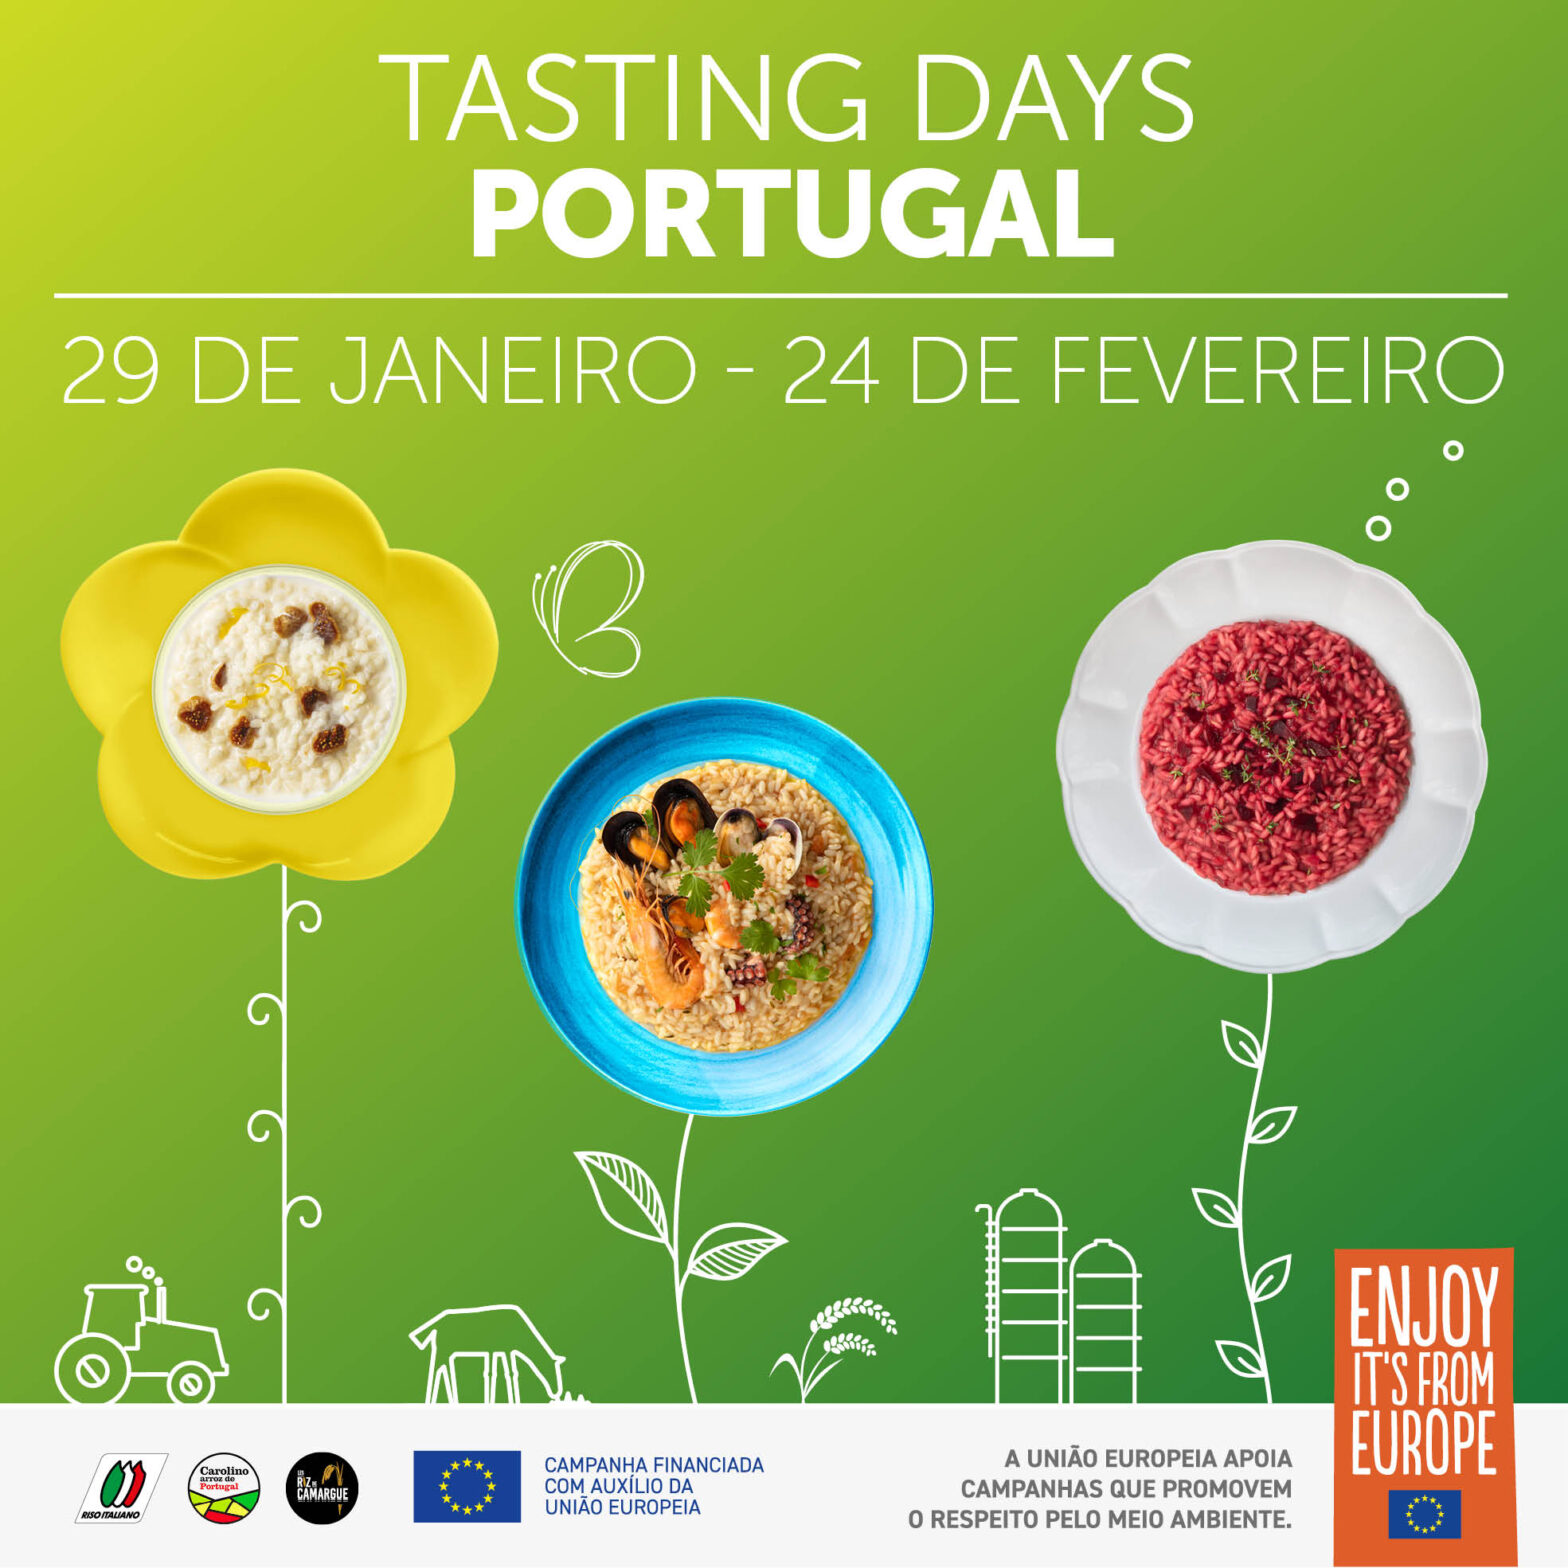 Testing days Portugal -29 de Janeiro-24 de fevereiro